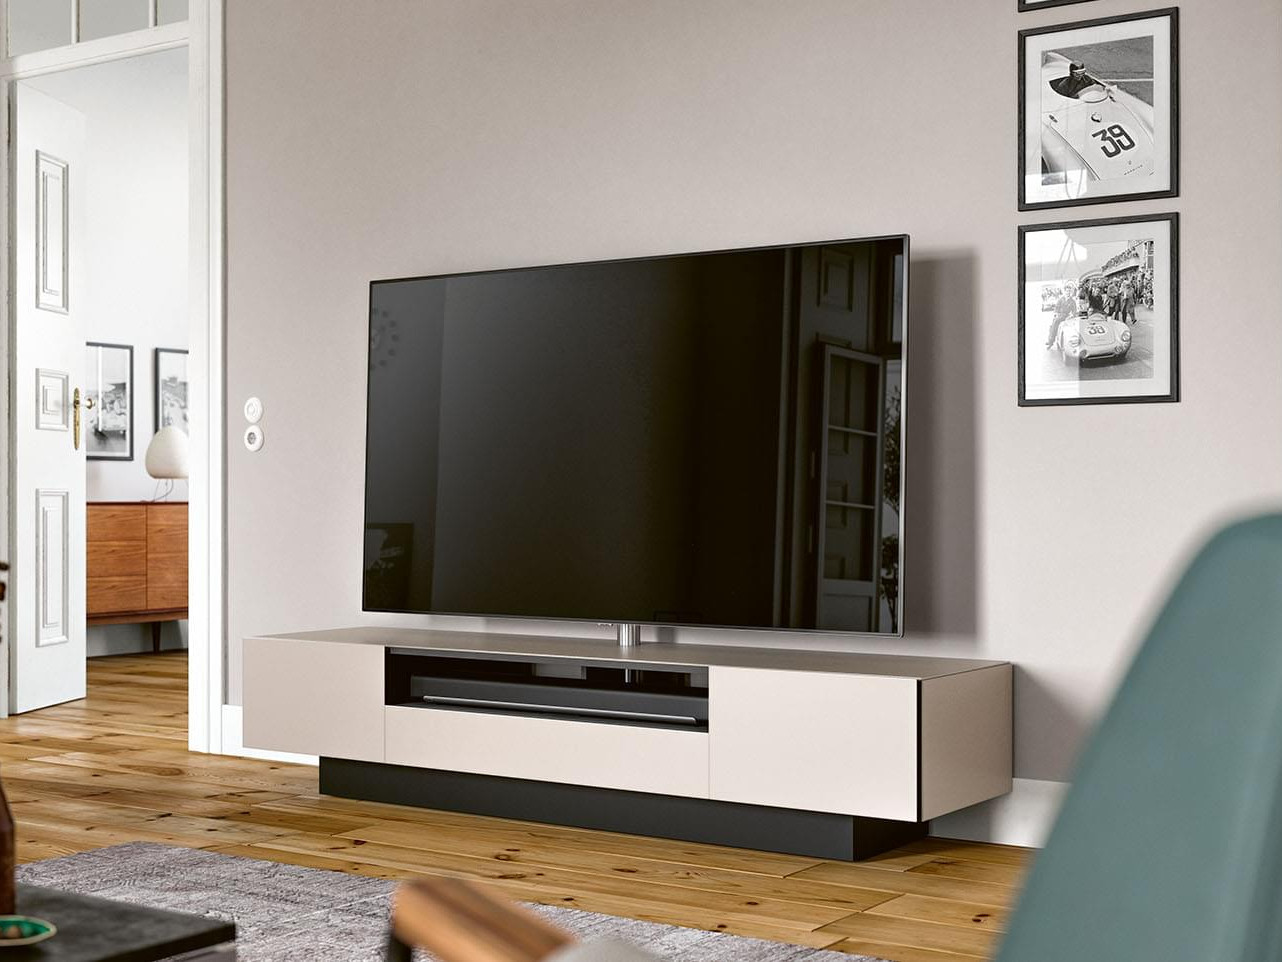 Waar op letten bij uitkiezen luxe TV meubel?